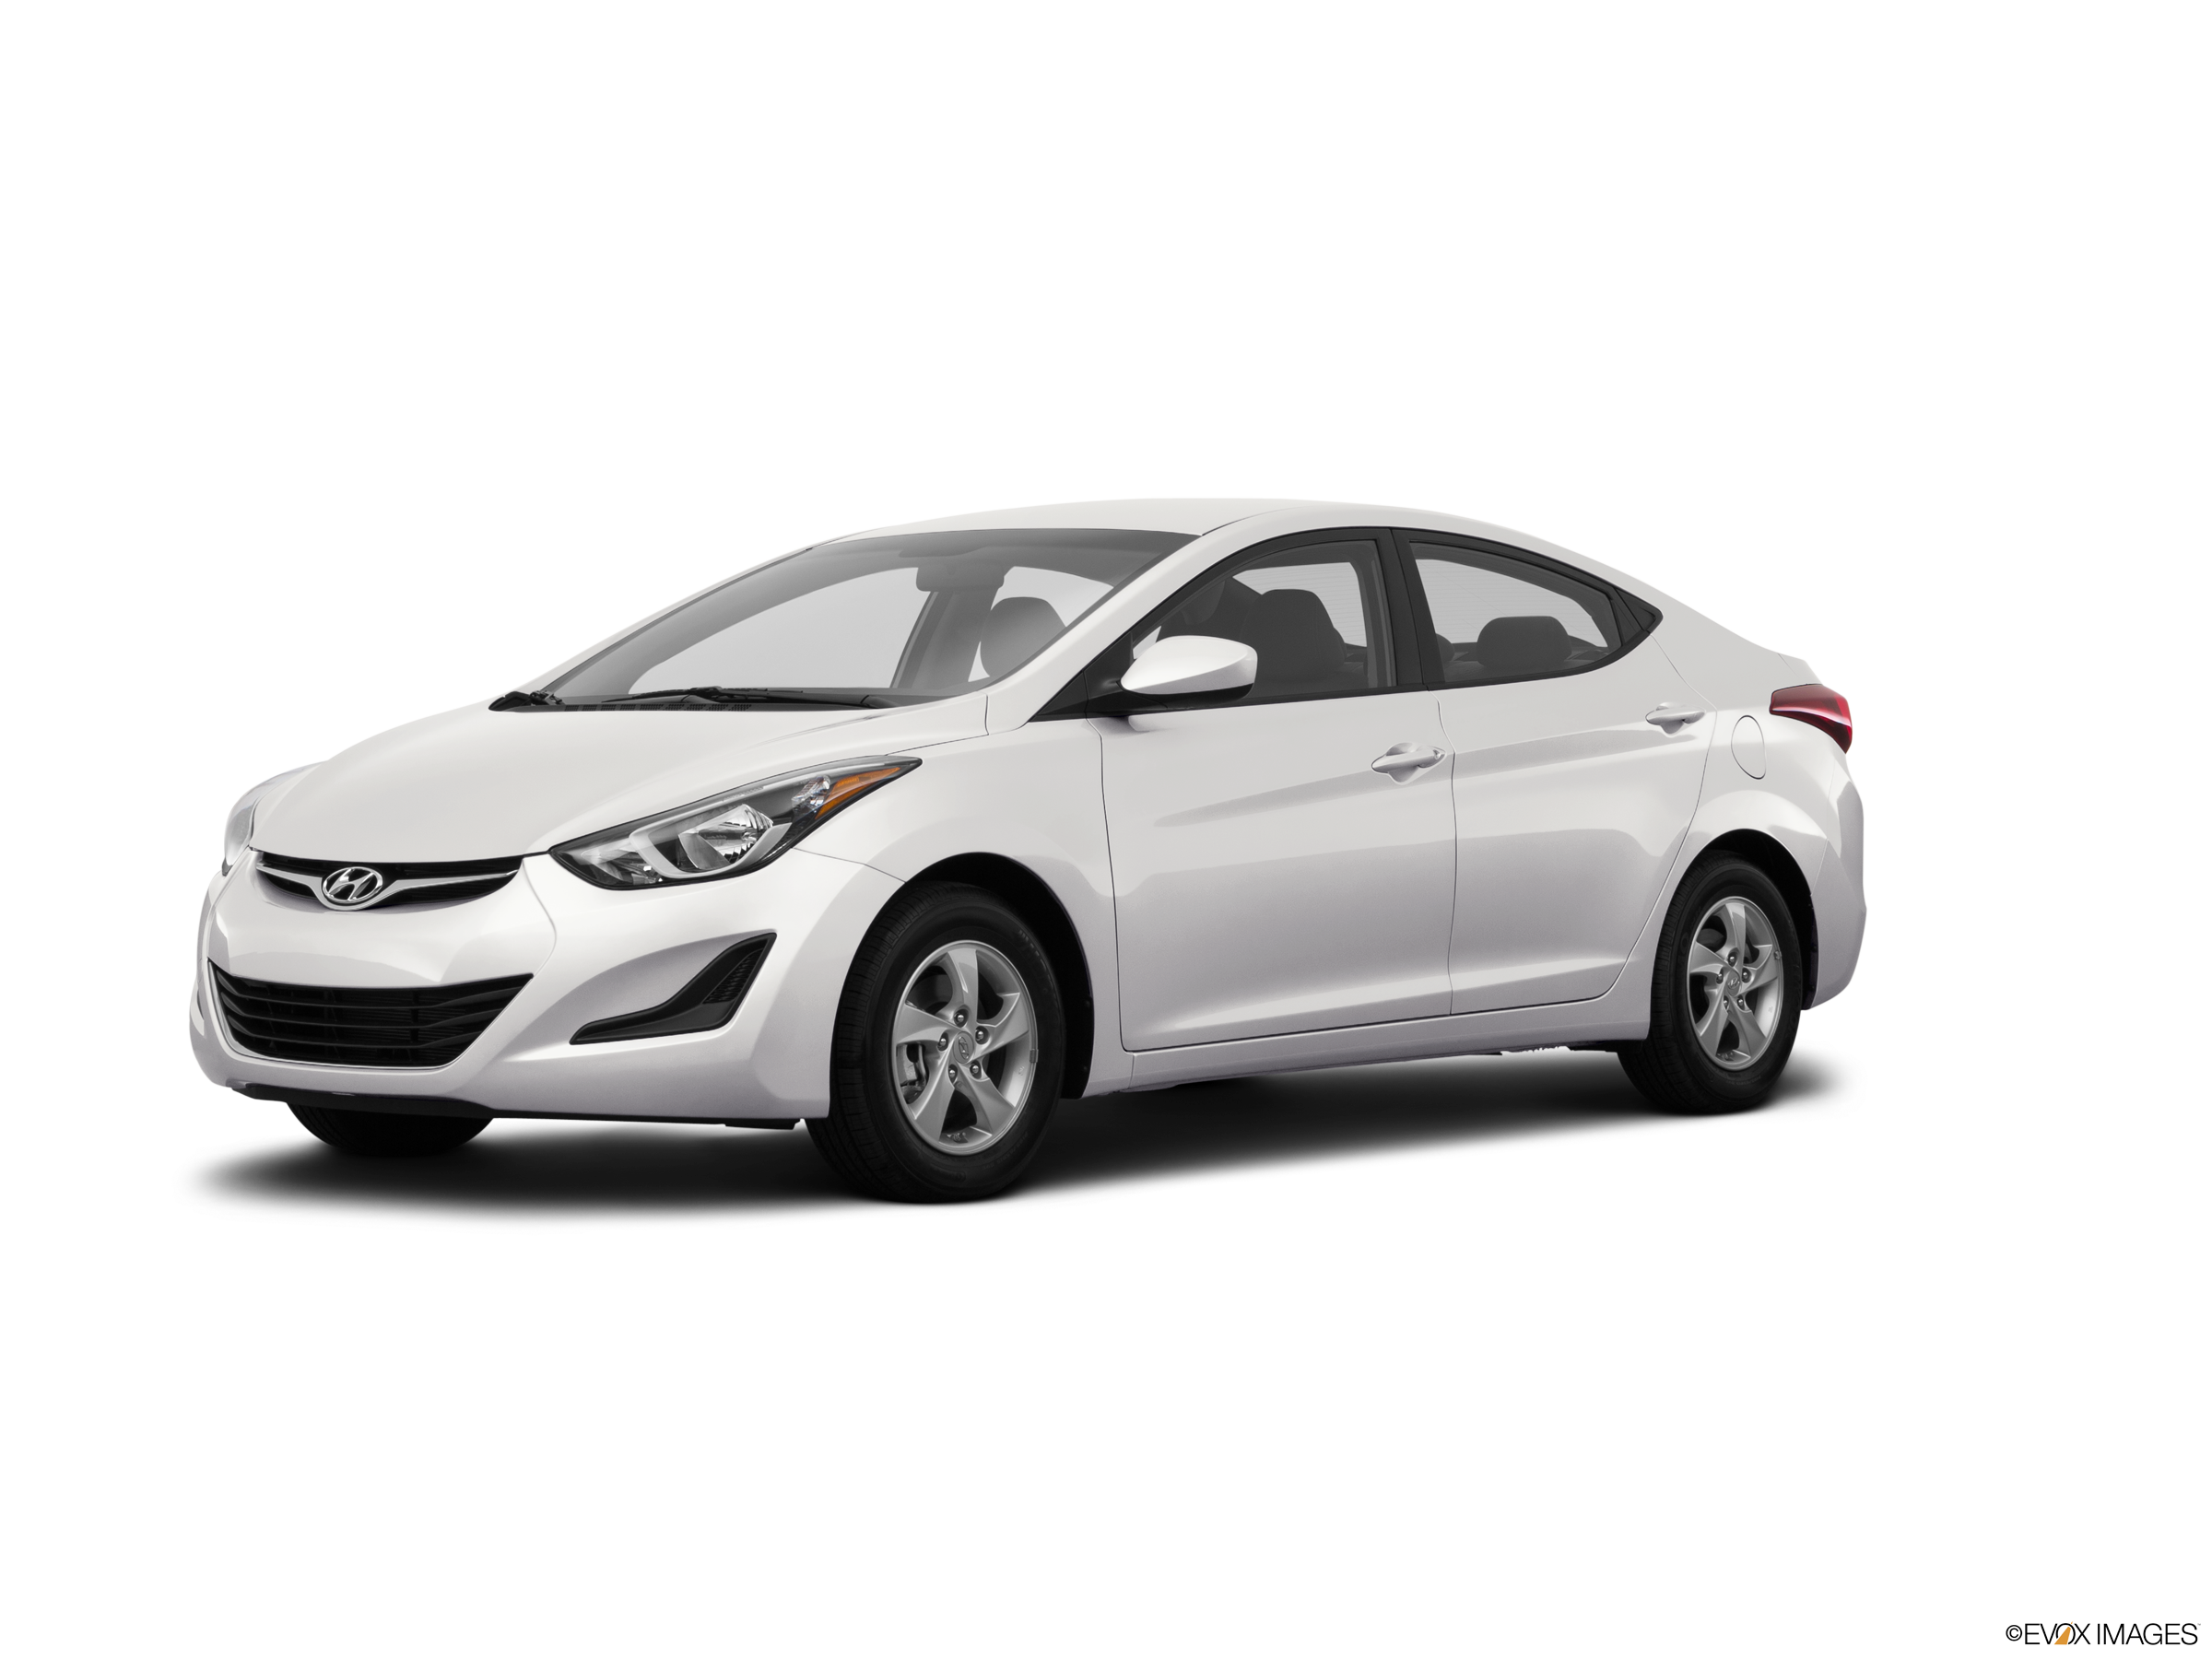 Hyundai Accent 2015 chiếc xe phân khúc B tiết kiệm nhiên liệu